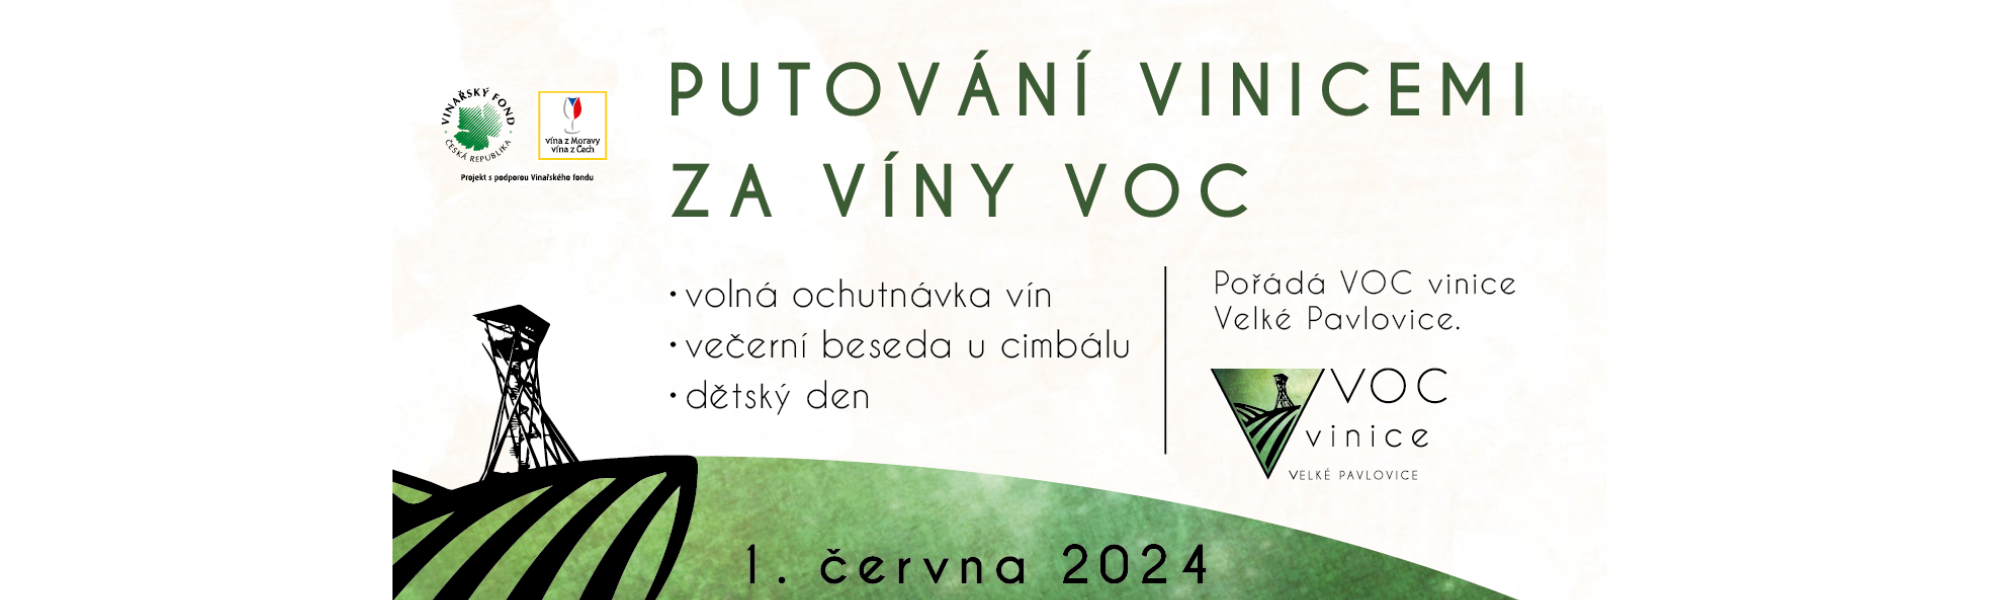 Putování vinicemi za víny VOC |1. června 2024 |Více info...|https://www.vocvelkepavlovice.cz/putovani-vinicemi-za-viny-voc